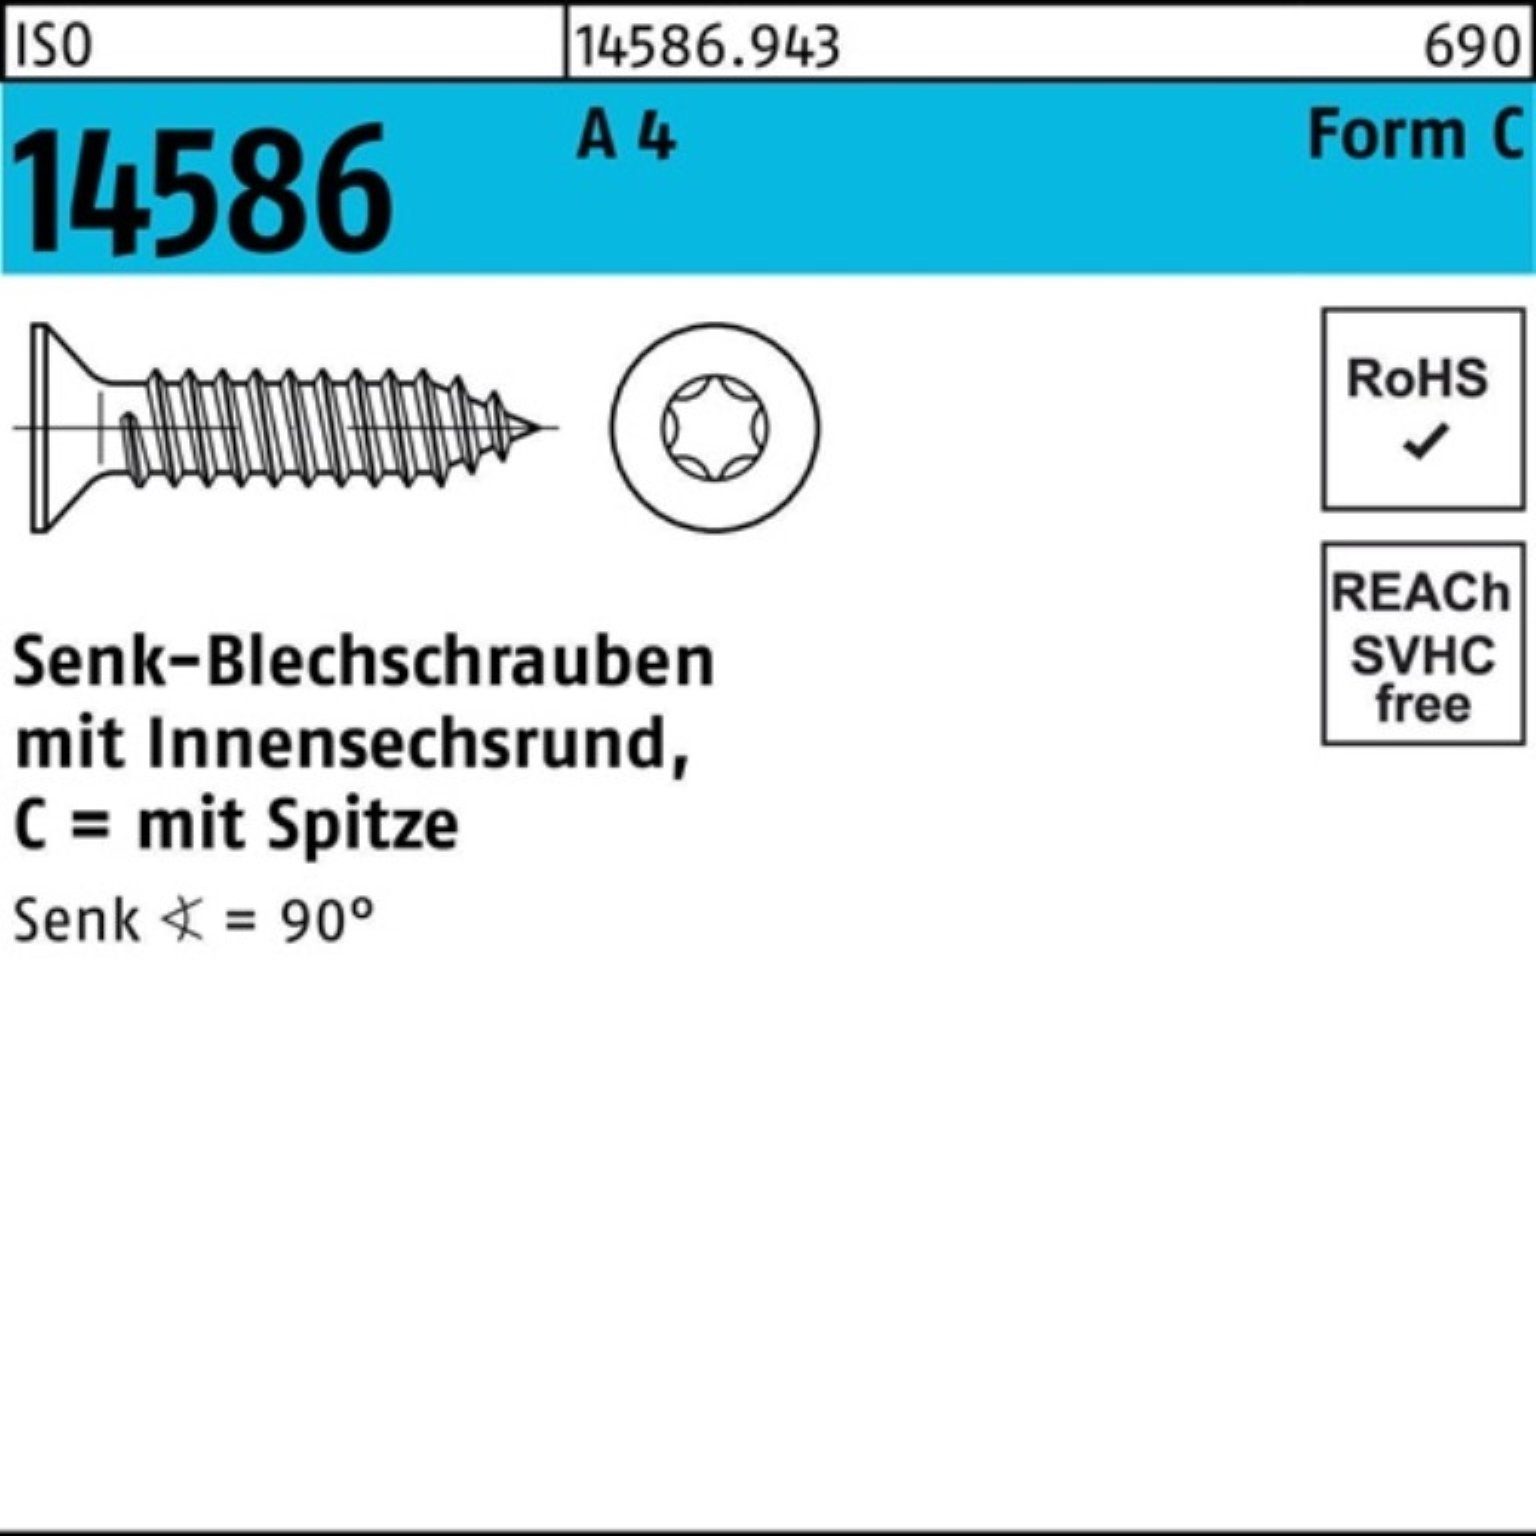 Reyher Schraube 500er Pack Senkblechschraube ISO 14586 ISR/Spitze 5,5x 13-T25 A 4 500